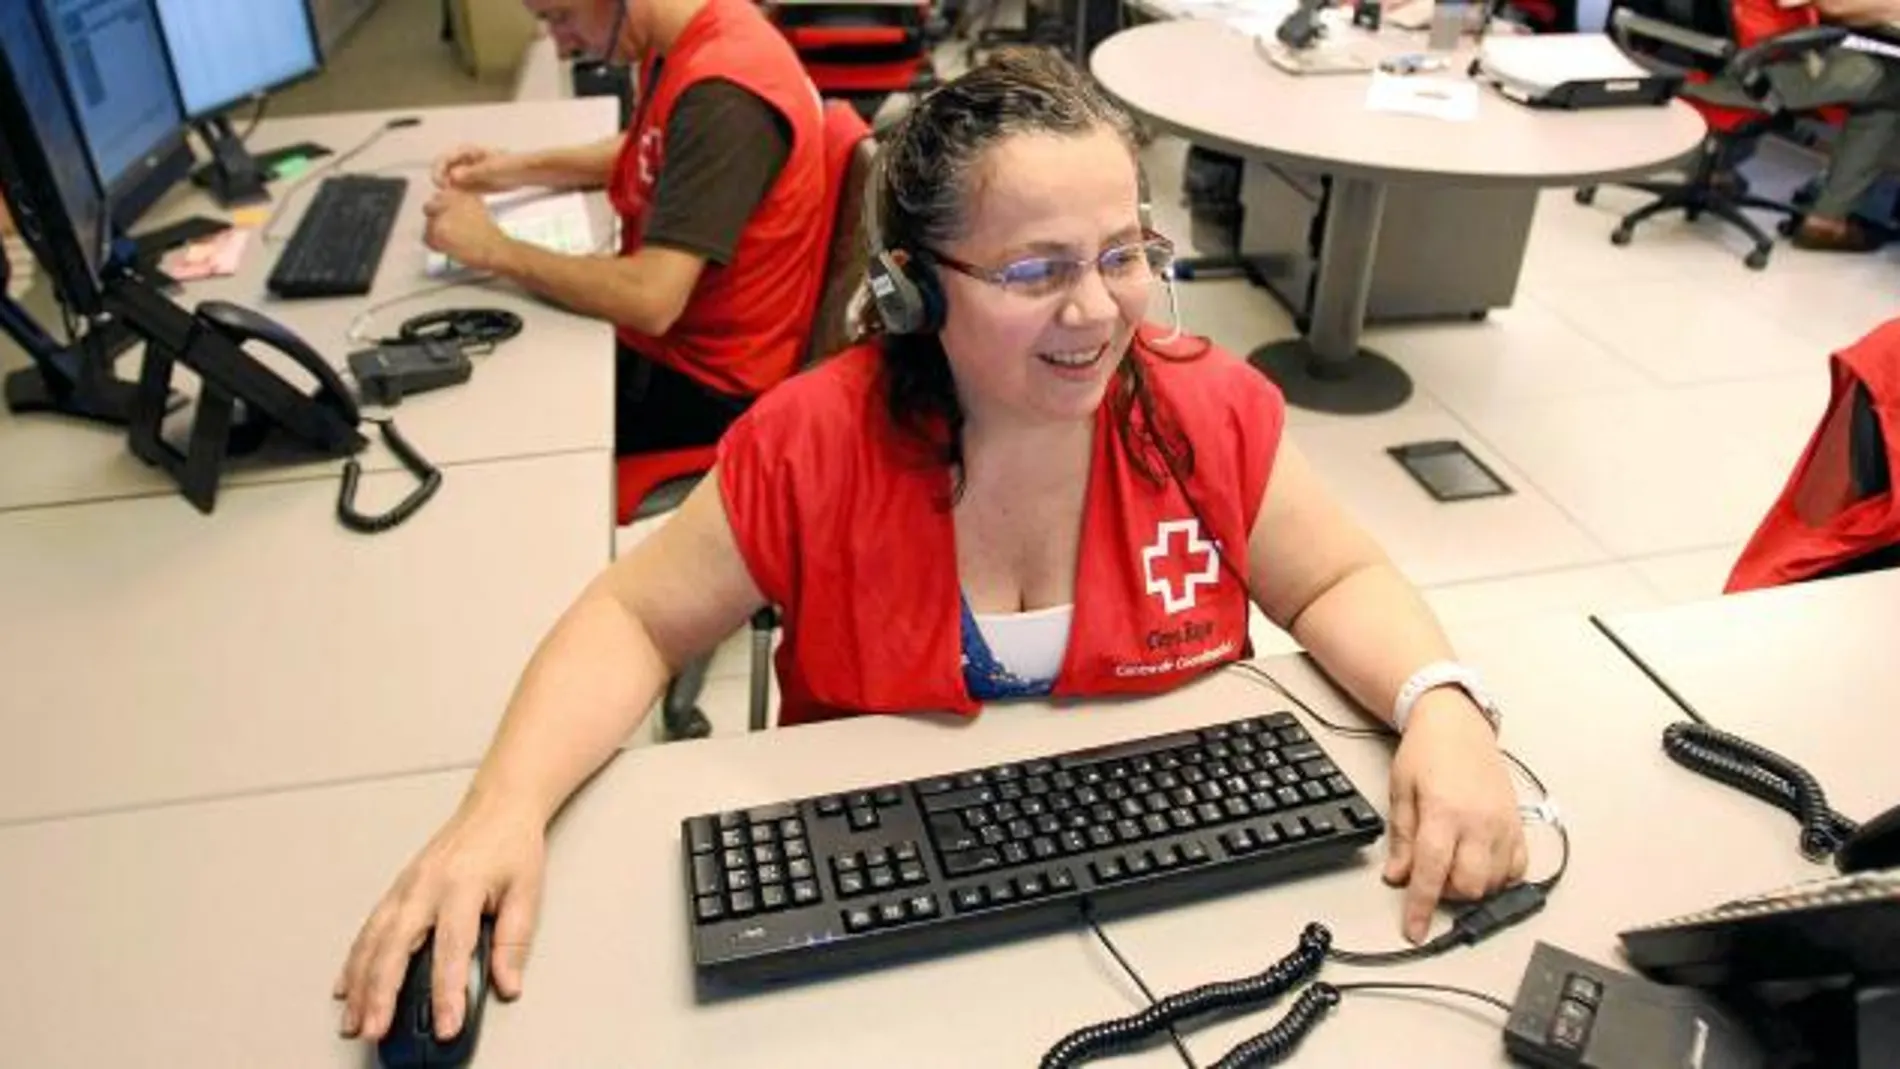 Cruz Roja estrena un servicio de asistencia móvil GPS para gente mayor